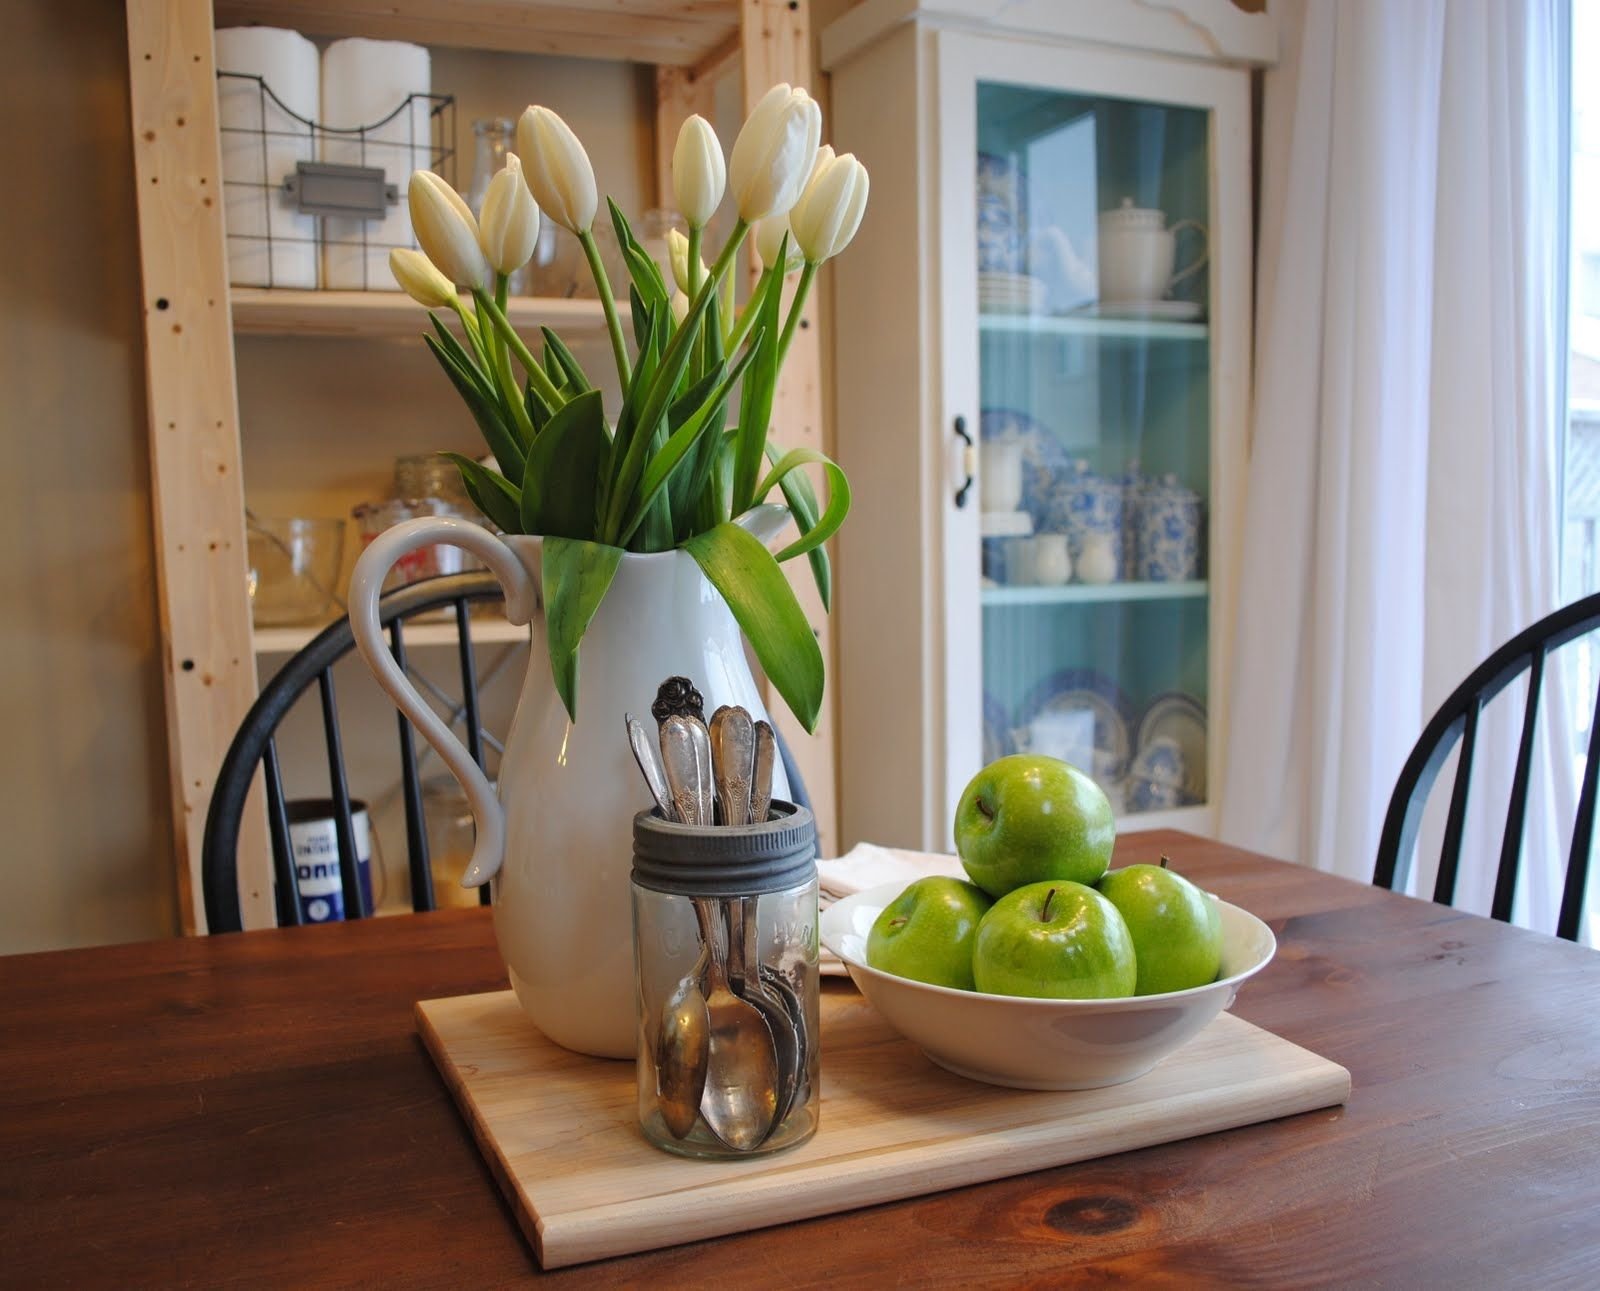 Тюльпаны в интерьере. Тюльпаны Villeroy Boch. Тюльпаны в интерьере кухни. Цветы на кухонном столе. Искусственные цветы в интерьере кухни.